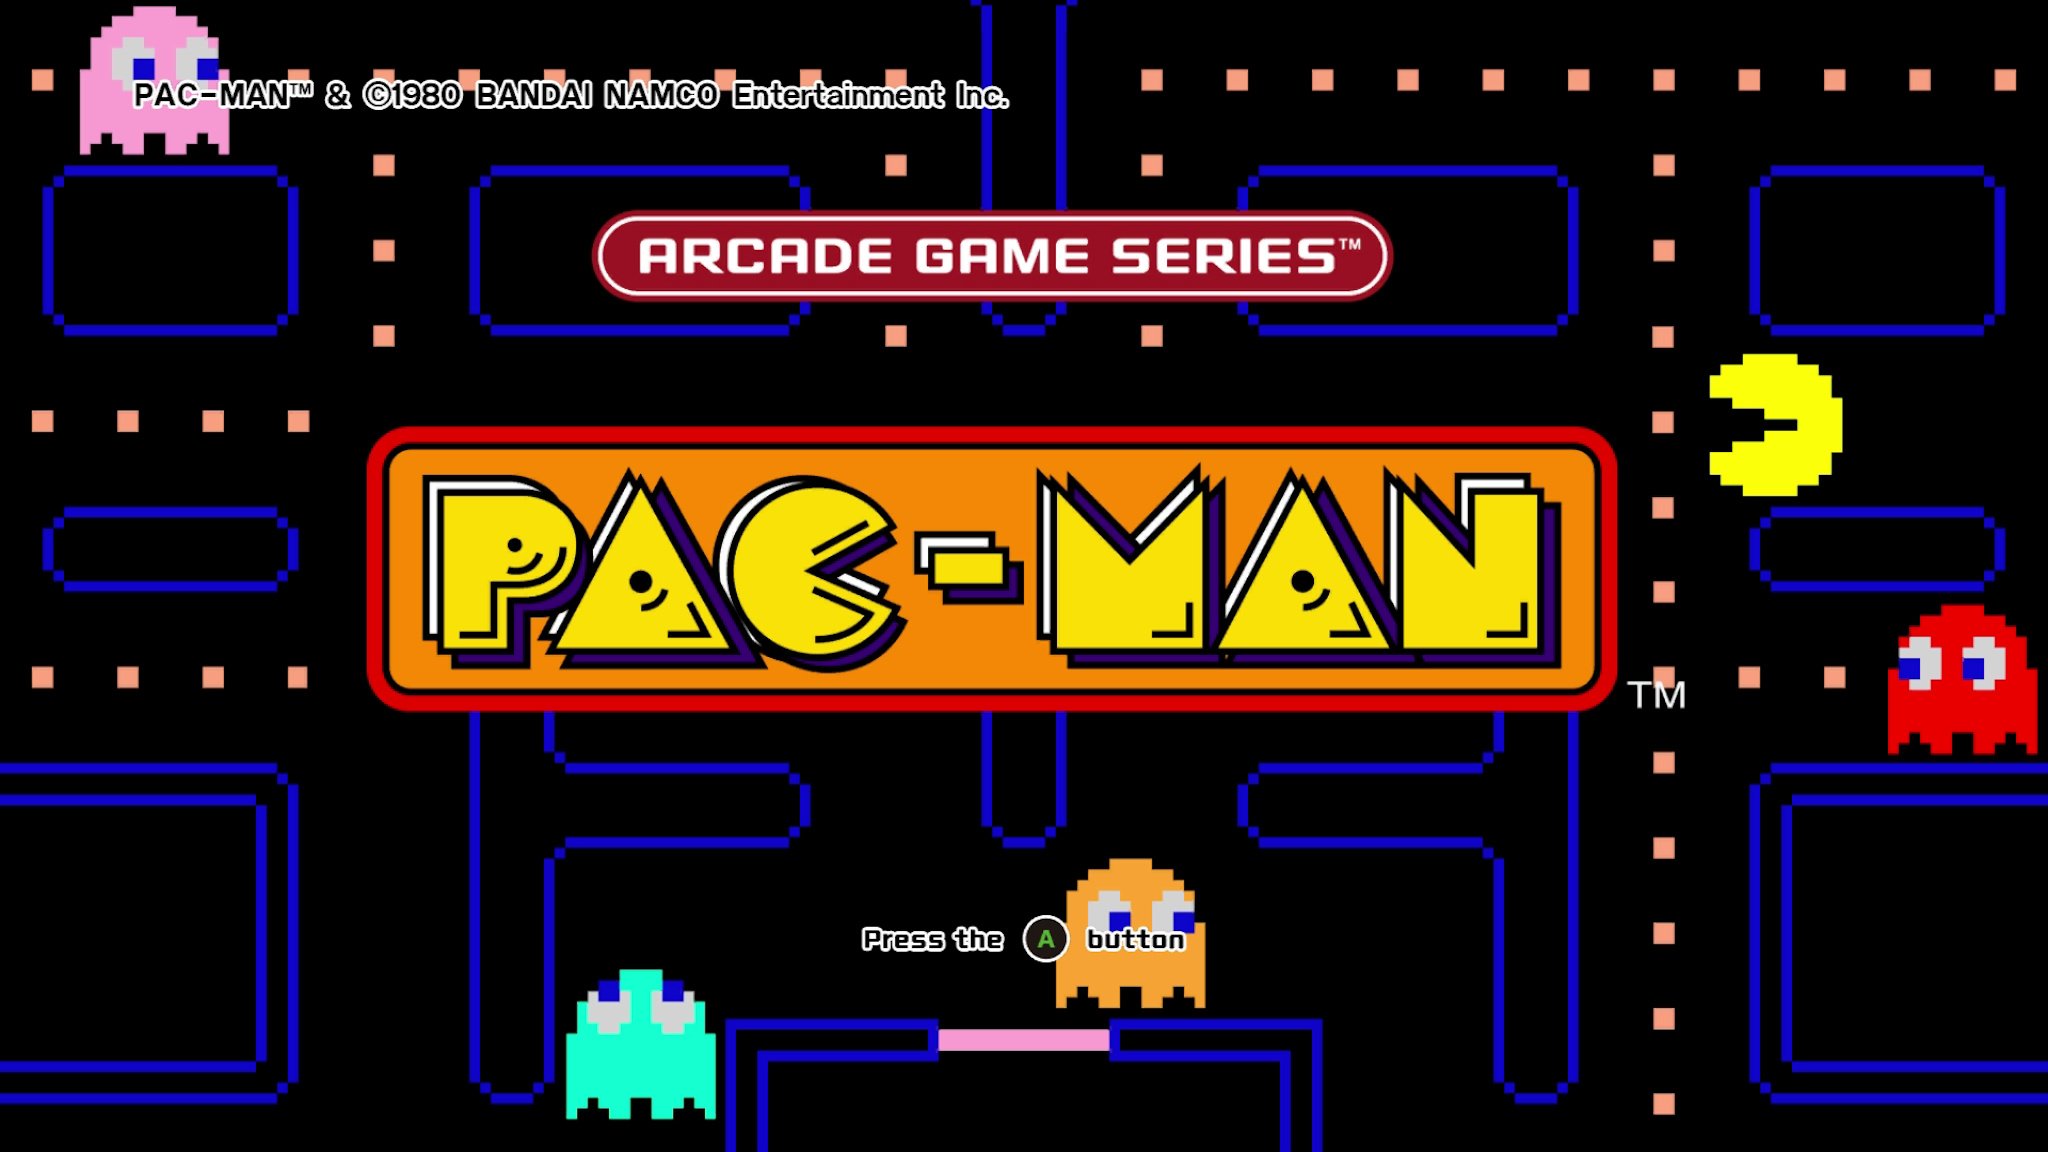 Arcade-Game-Series-Pac-Man-Xbox-One-title-screen-main.jpg